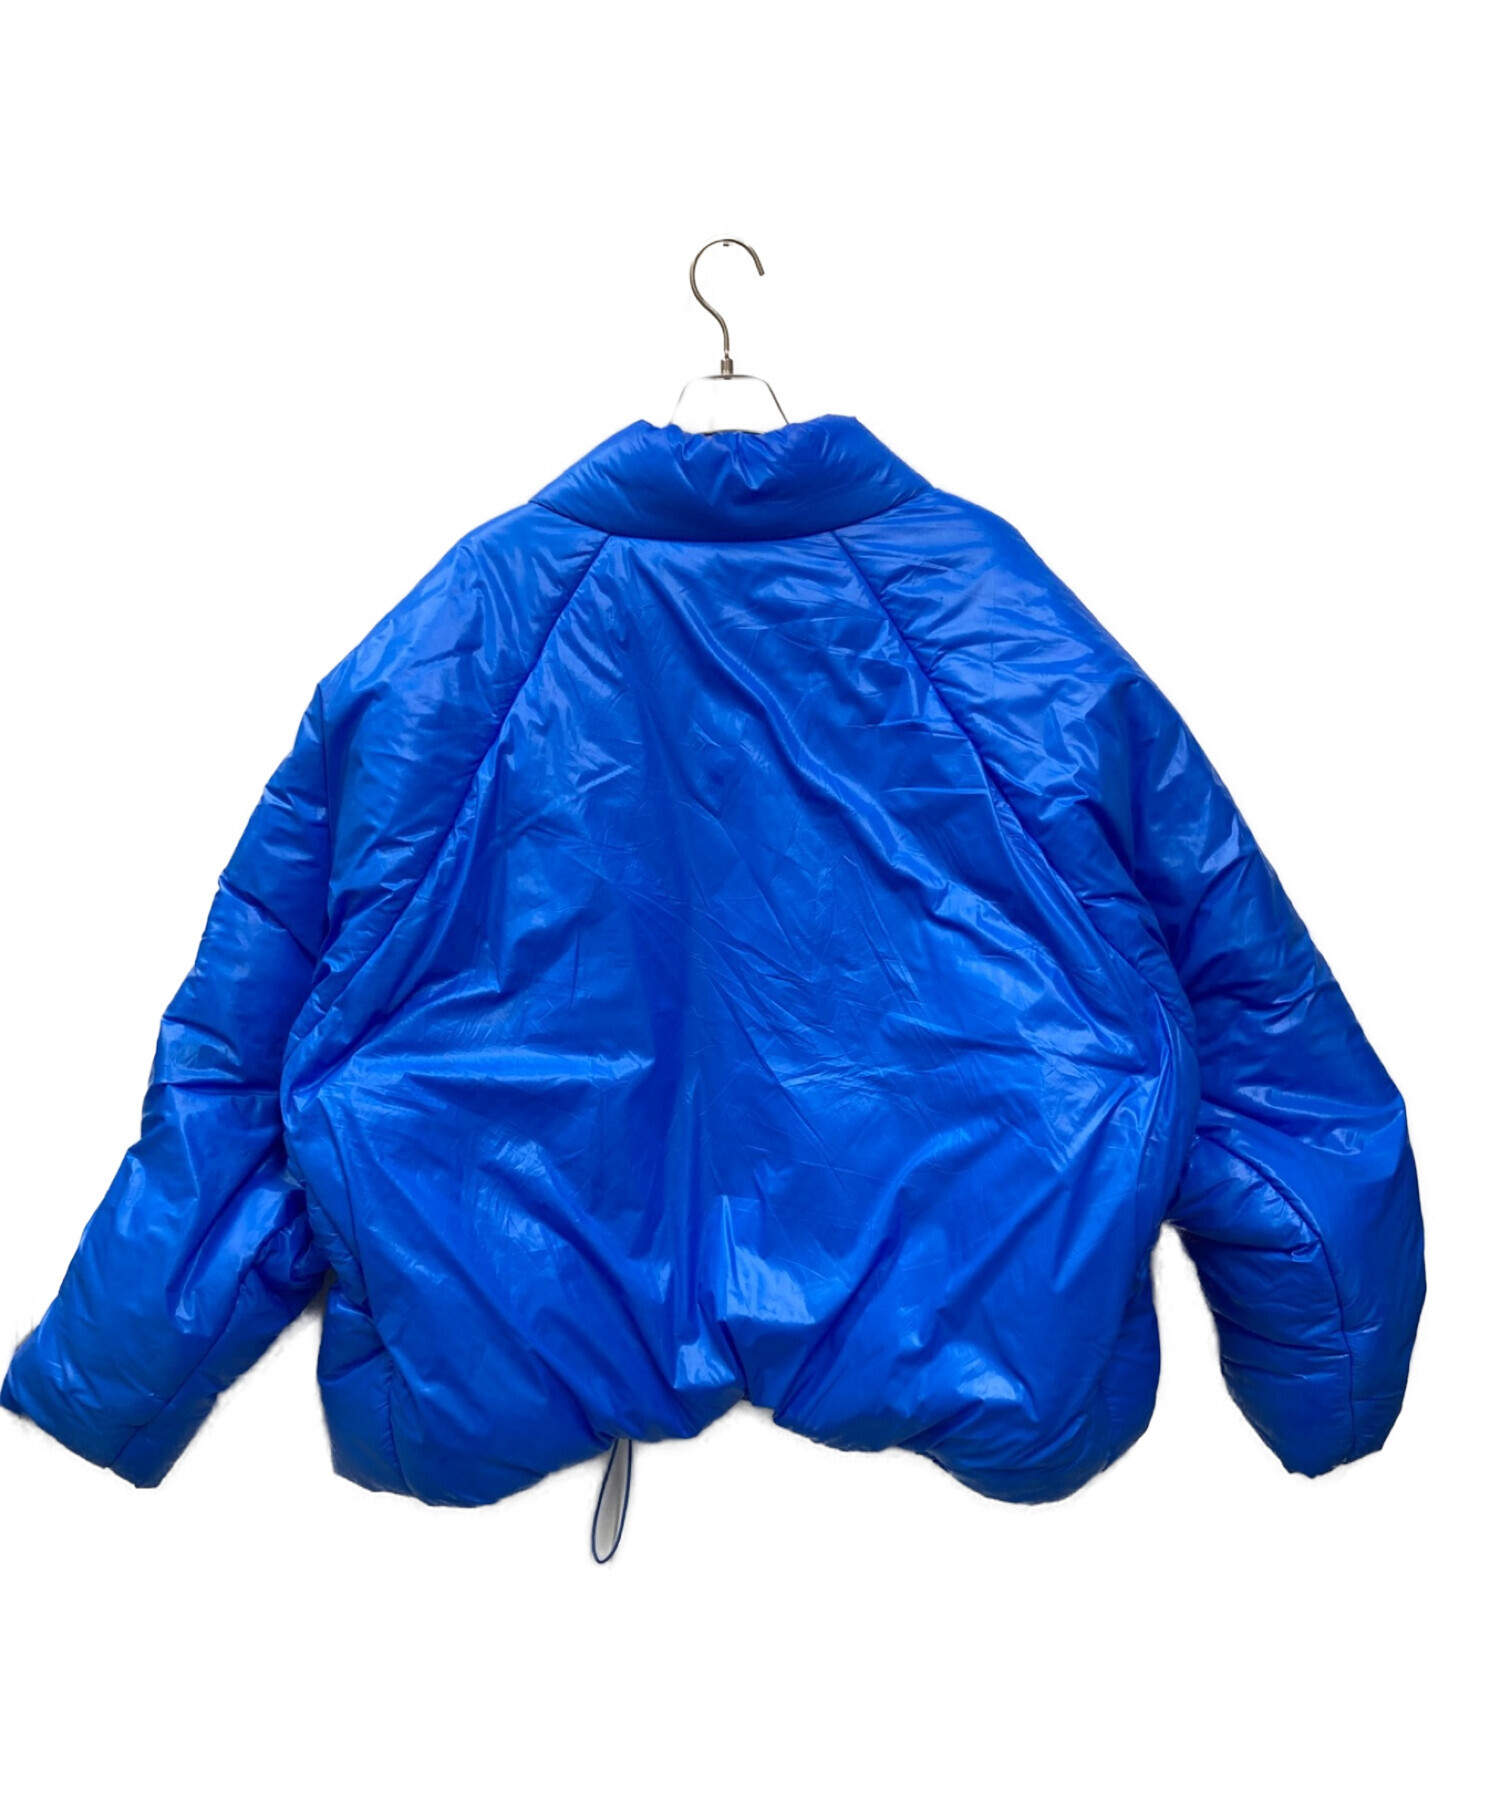 YEEZY (イージー) GAP (ギャップ) Round Jacket ブルー サイズ:XL